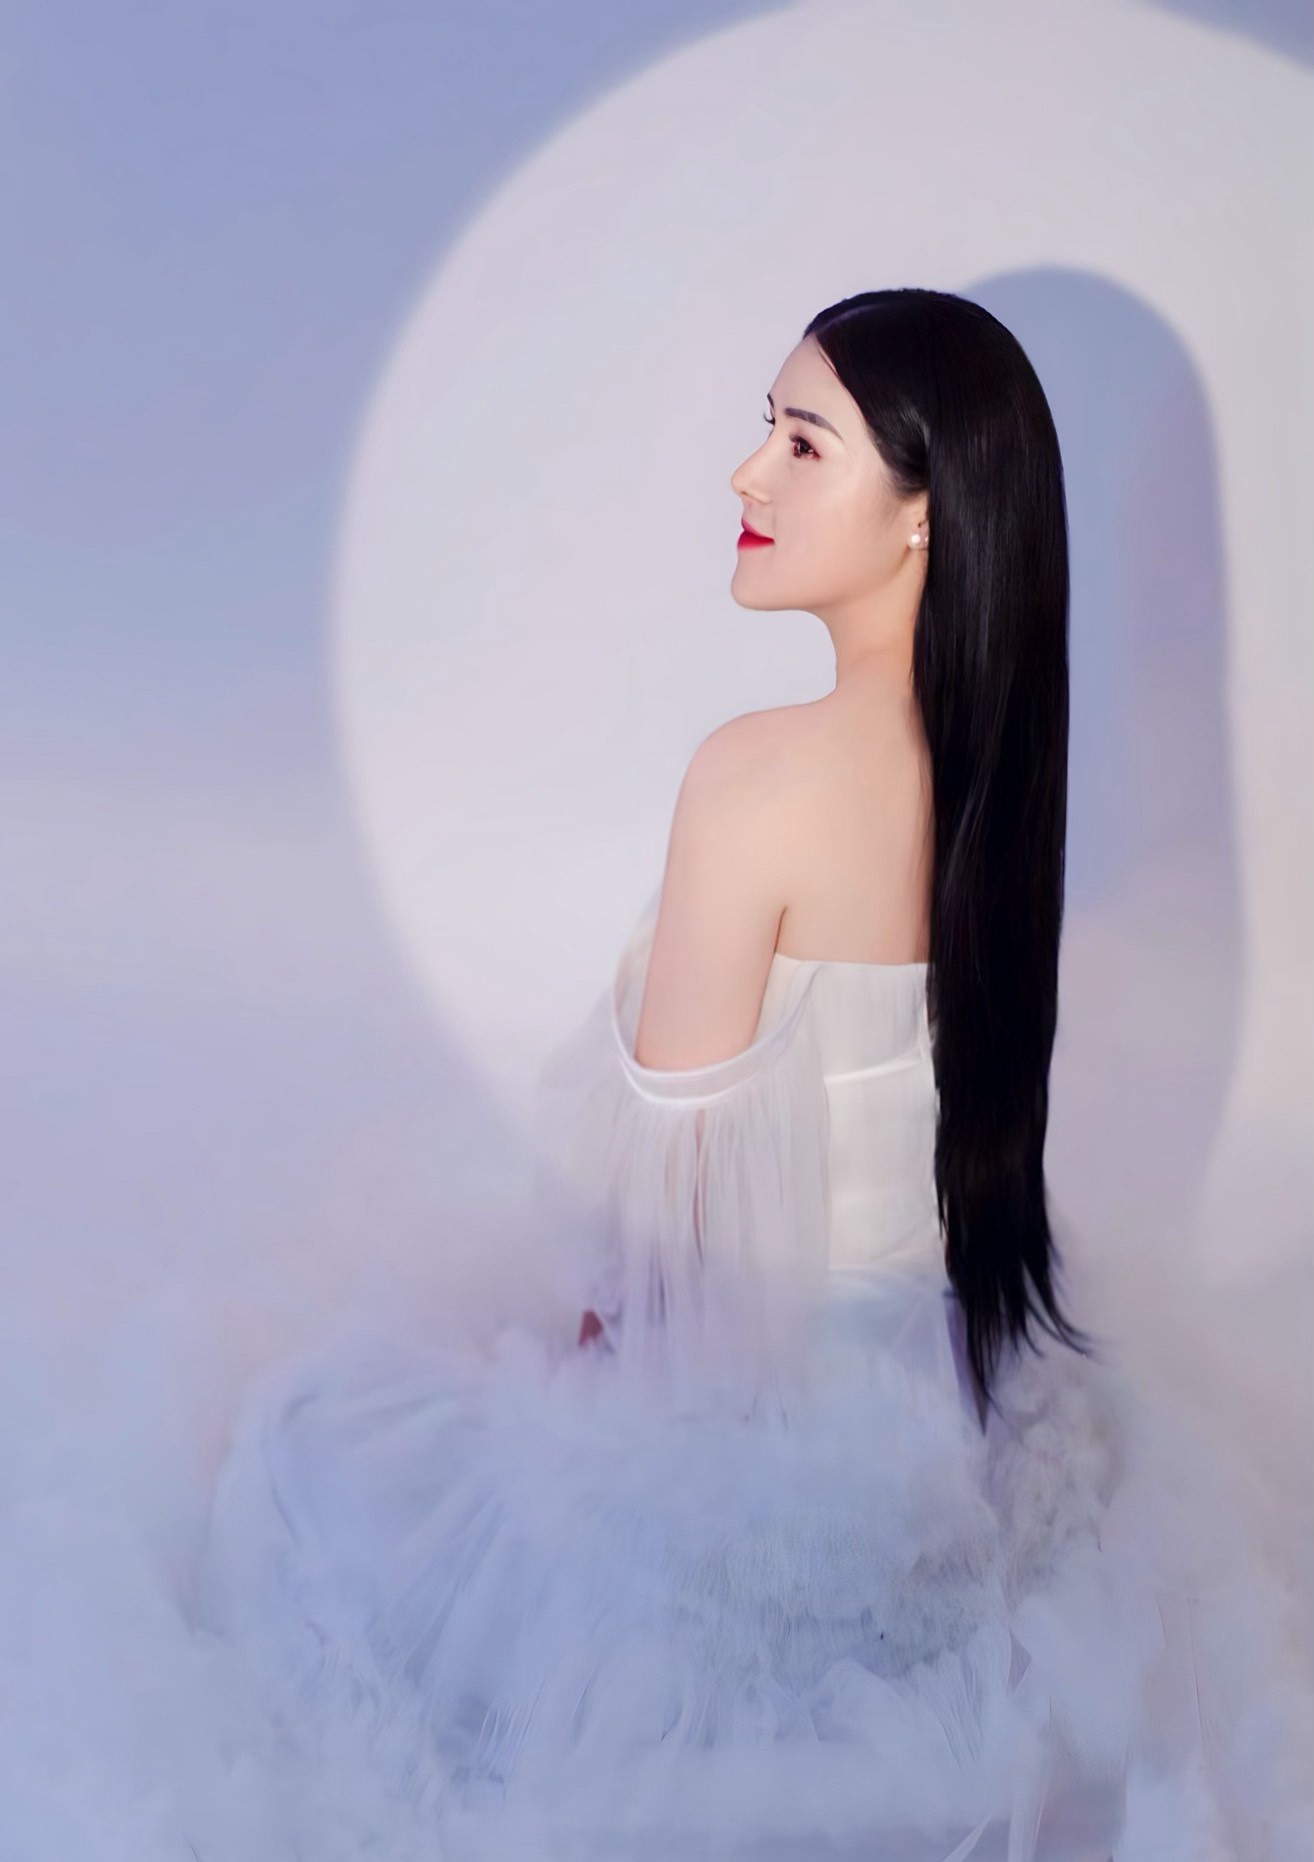 Hé lộ điều ít biết về cựu người mẫu Lyna Thiên Nga, mẹ đơn thân 2 con - ảnh 5